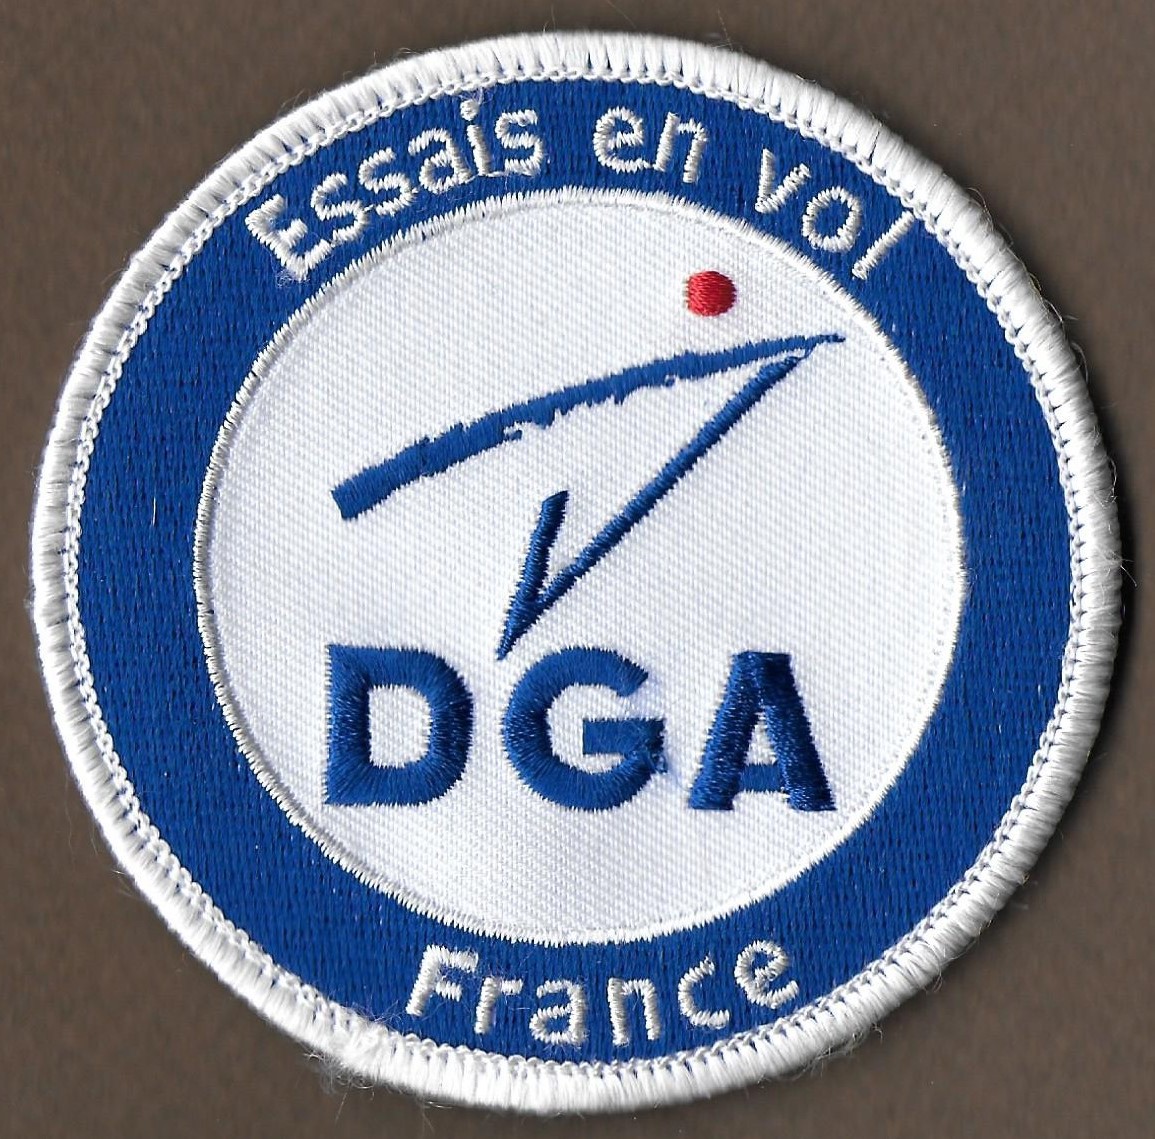 DGA - Essais en vol - France - Mod 1